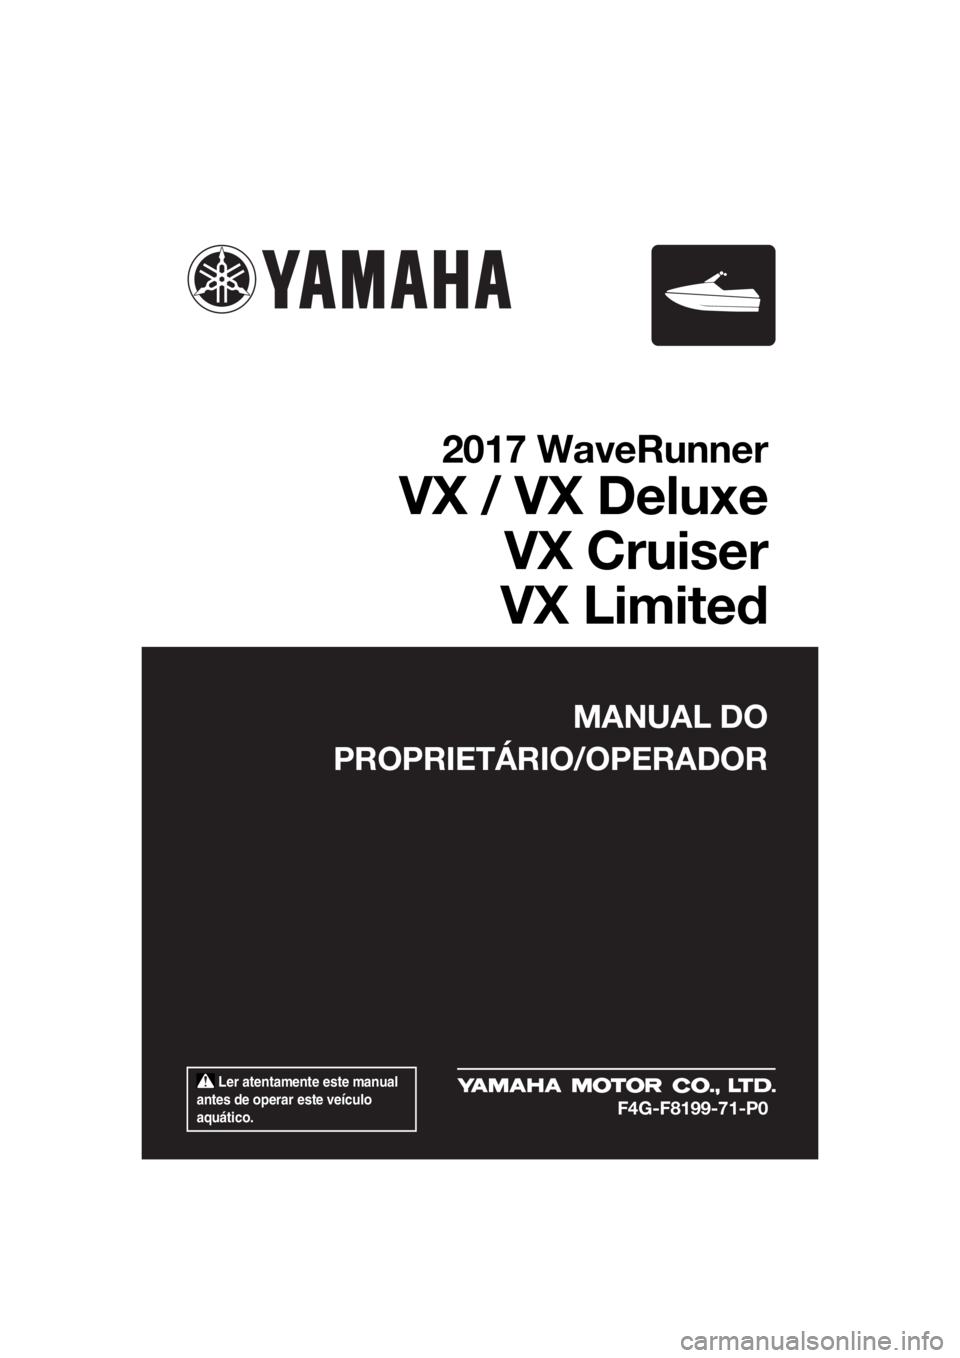 YAMAHA VX DELUXE 2017  Manual de utilização (in Portuguese)  Ler atentamente este manual 
antes de operar este veículo 
aquático.
MANUAL DO
PROPRIETÁRIO/OPERADOR
2017 WaveRunner
VX / VX Deluxe
VX Cruiser
VX Limited
F4G-F8199-71-P0
UF4G71P0.book  Page 1  Tue